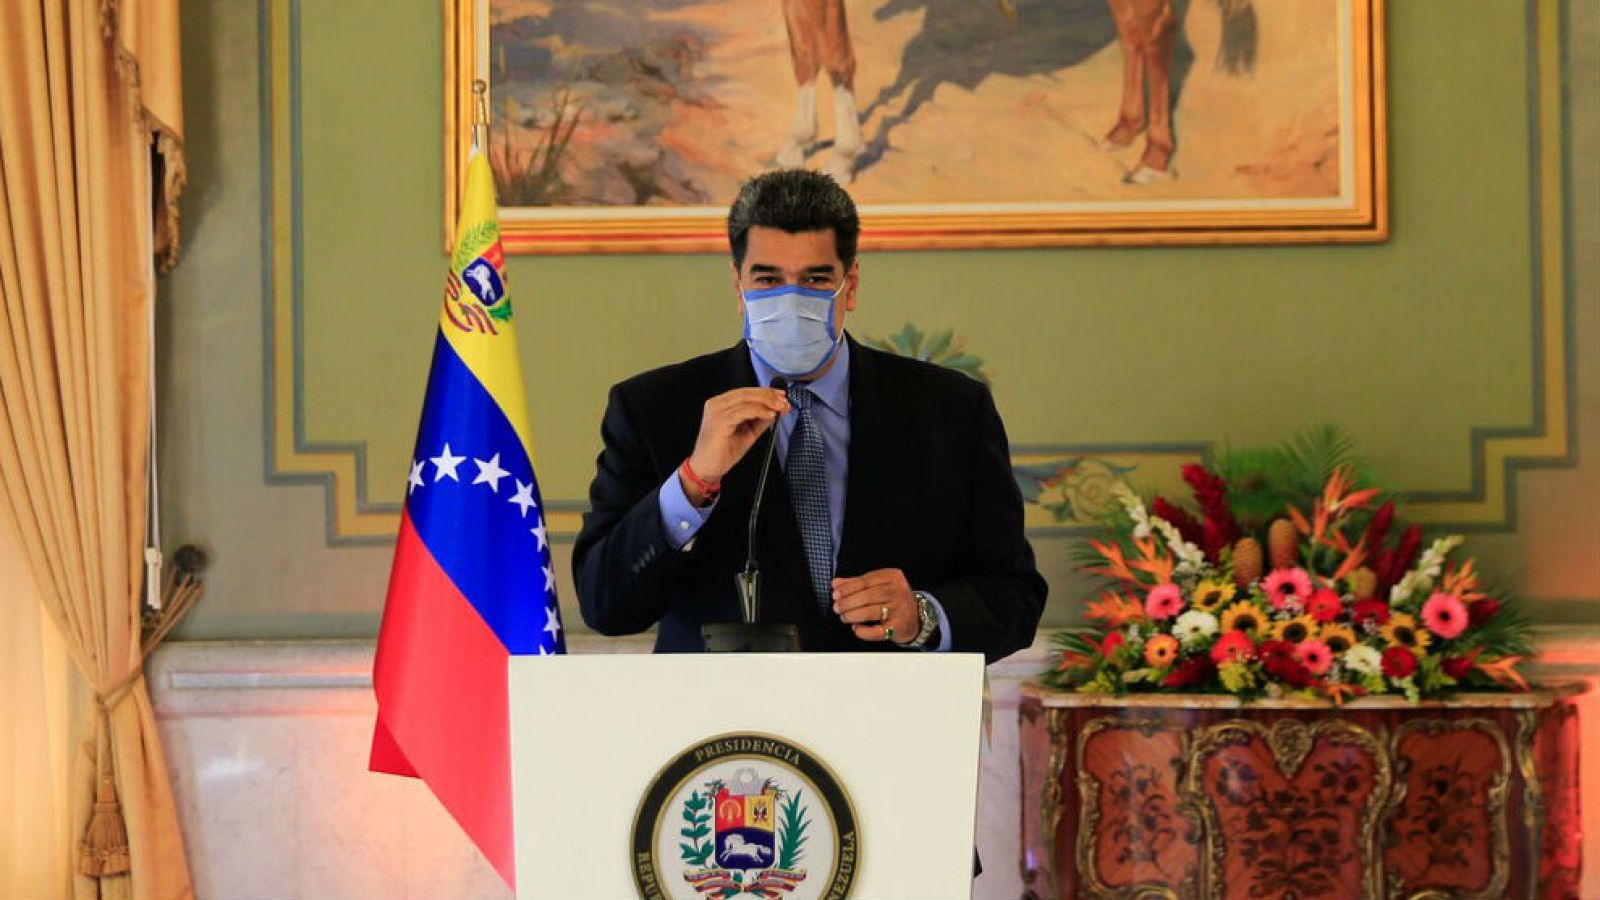 El presidente venezolano, Nicolás Maduro, hablando durante una videoconferencia de prensa con medios internacionales, en el Palacio Presidencial de Miraflores en Caracas, el 28 de octubre de 2020.